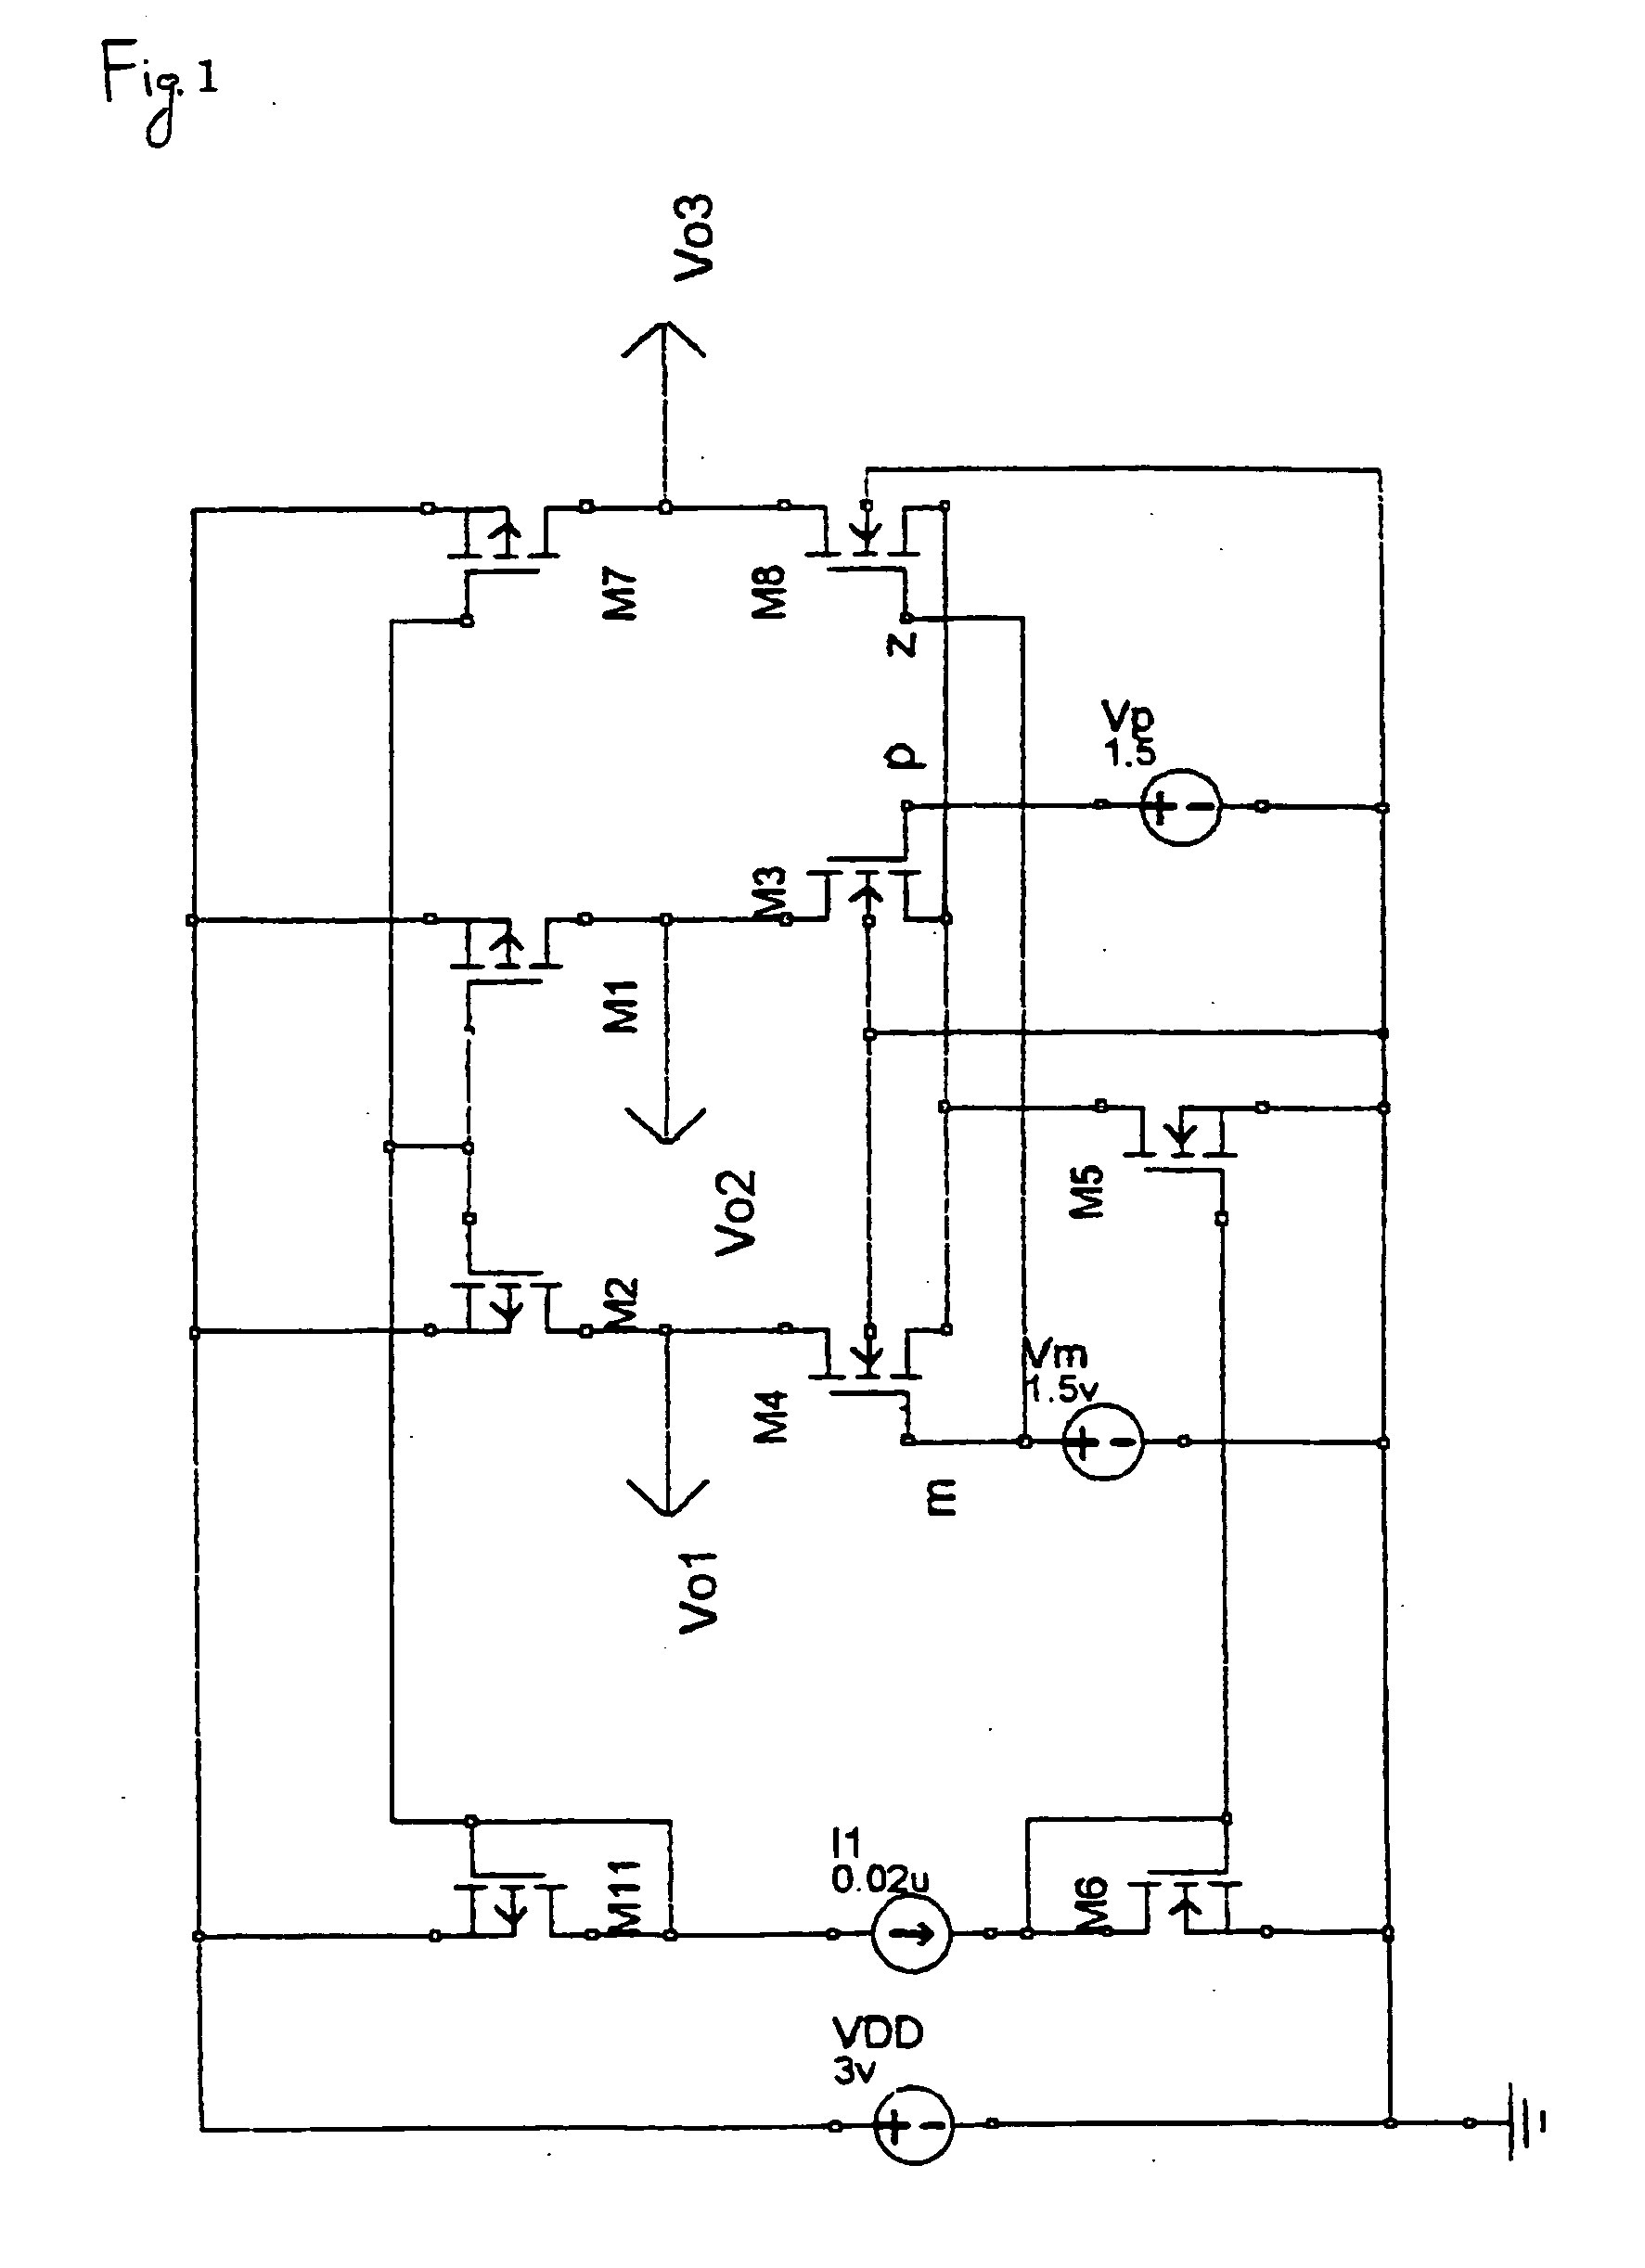 Multi-input differential circuit